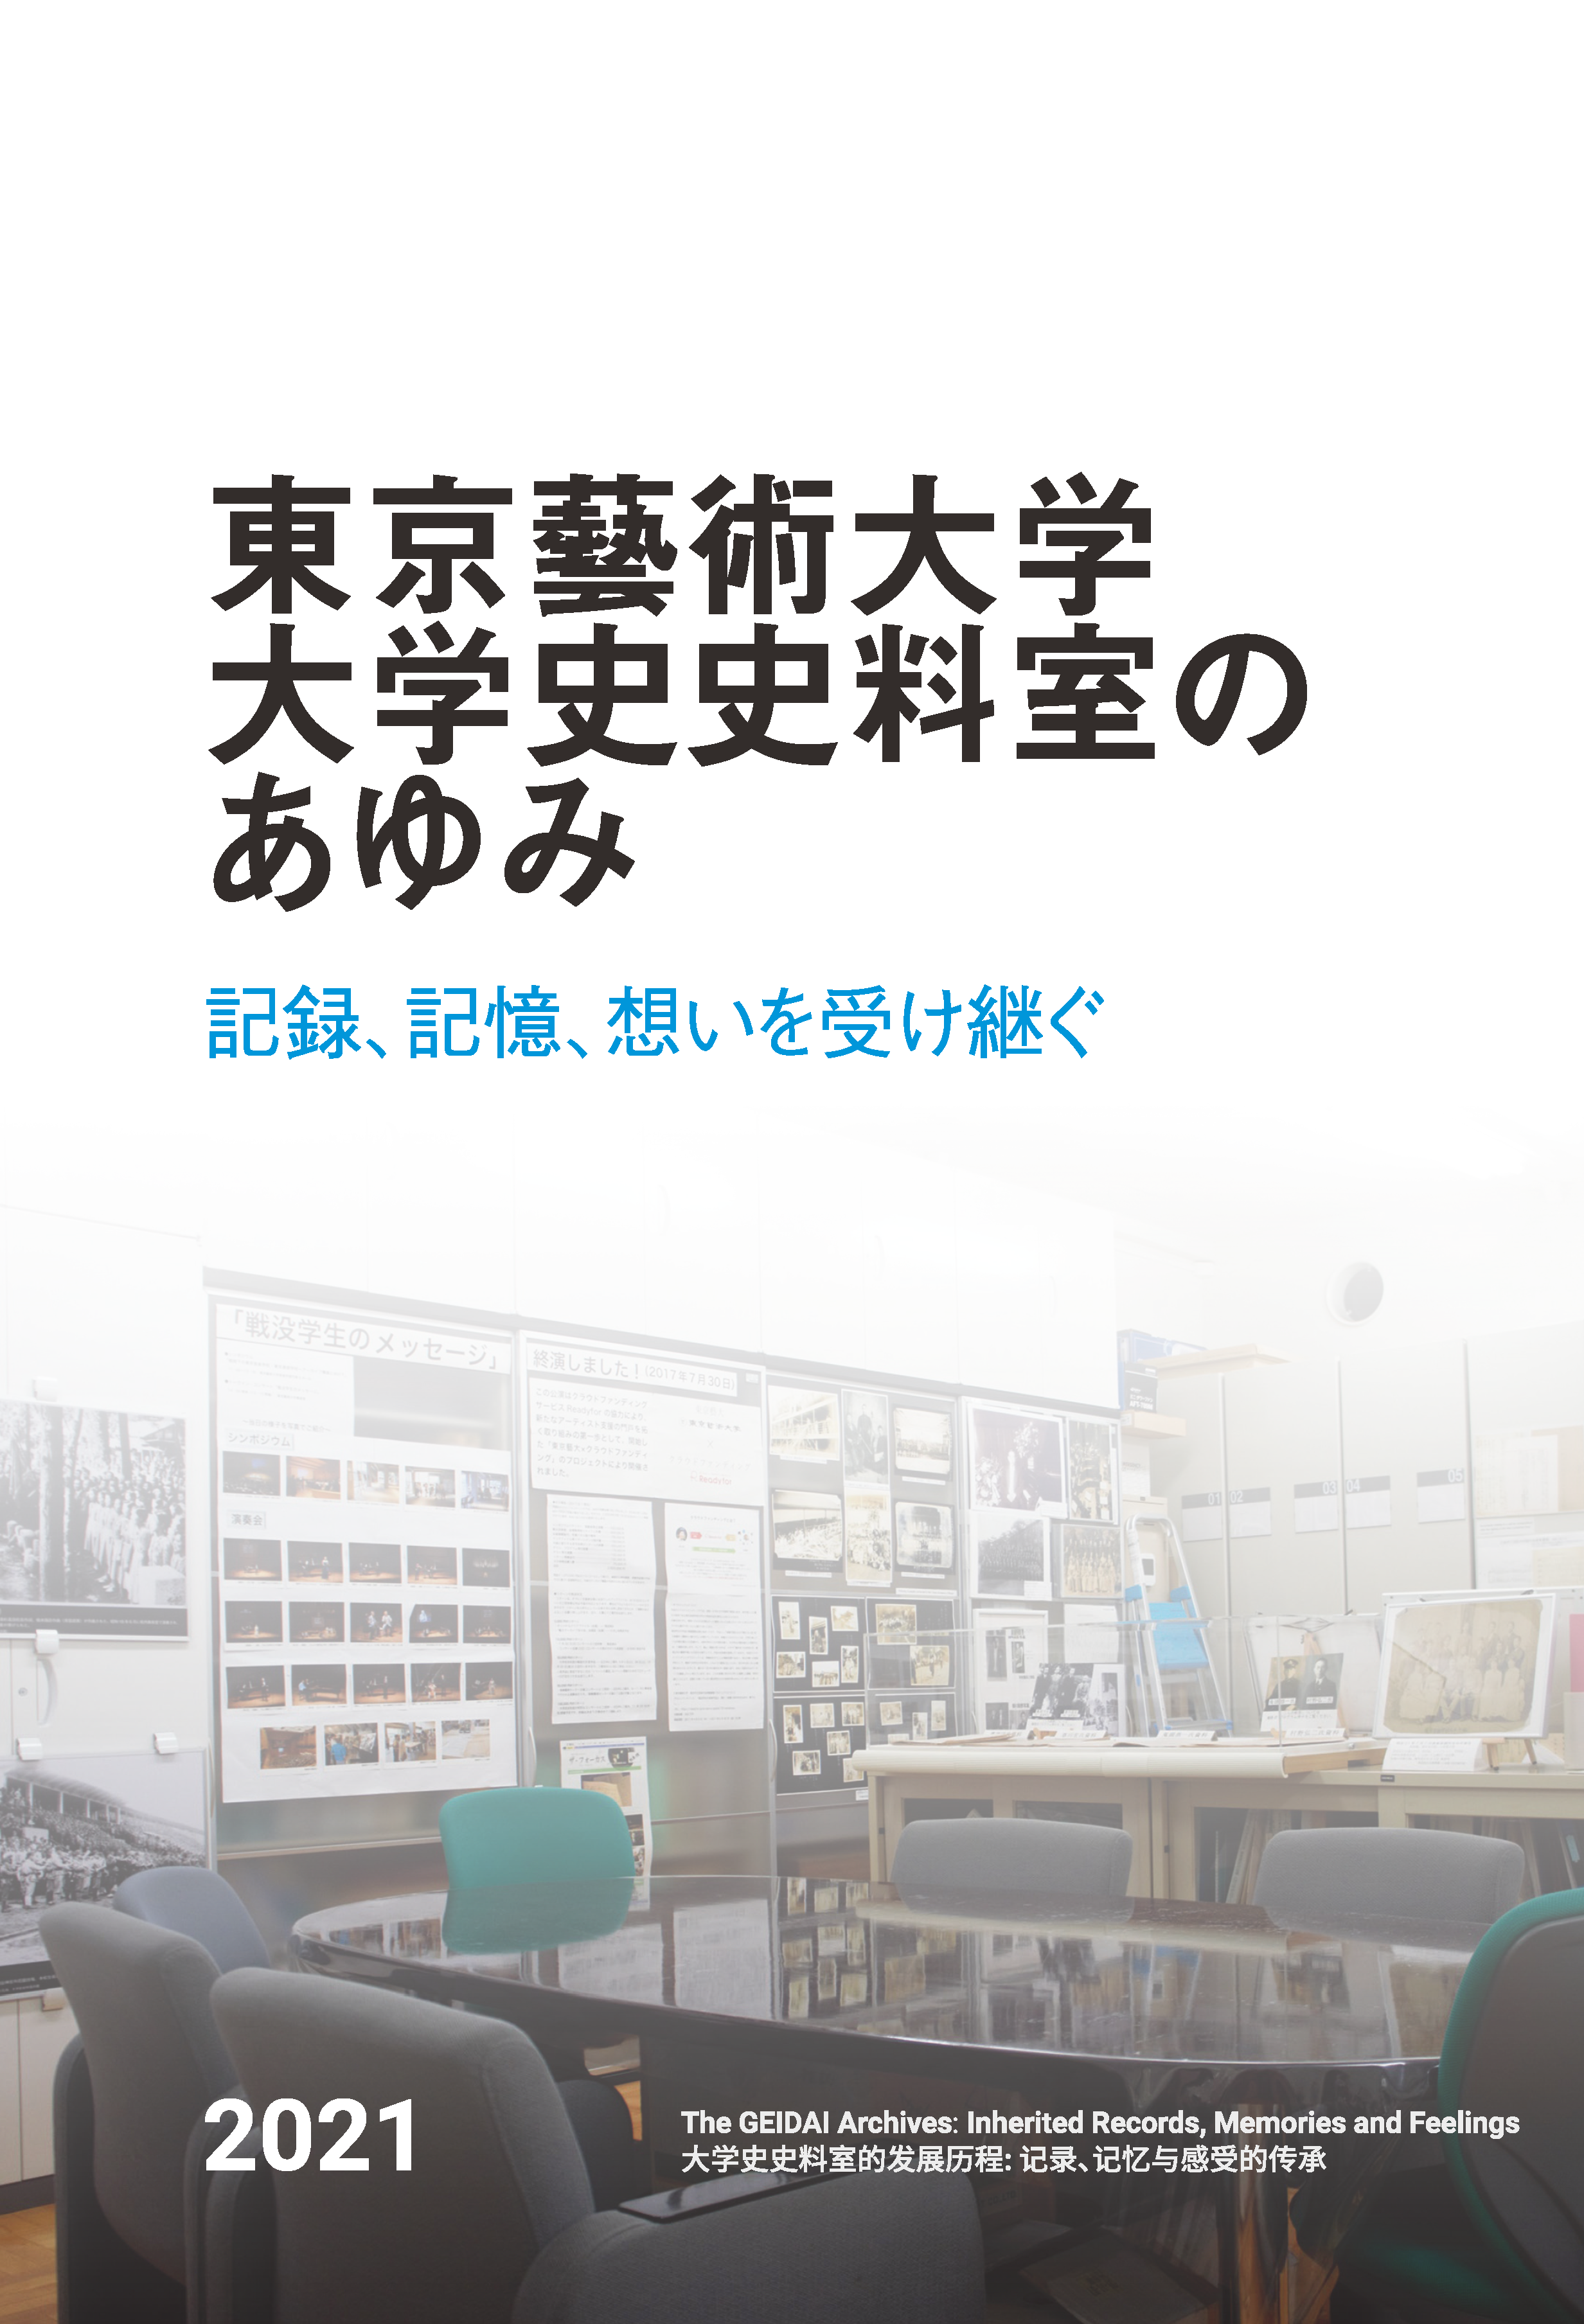 『東京藝術大学 大学史史料室のあゆみ：記録、記憶、想いを受け継ぐ』発行のお知らせ ※電子版もあります